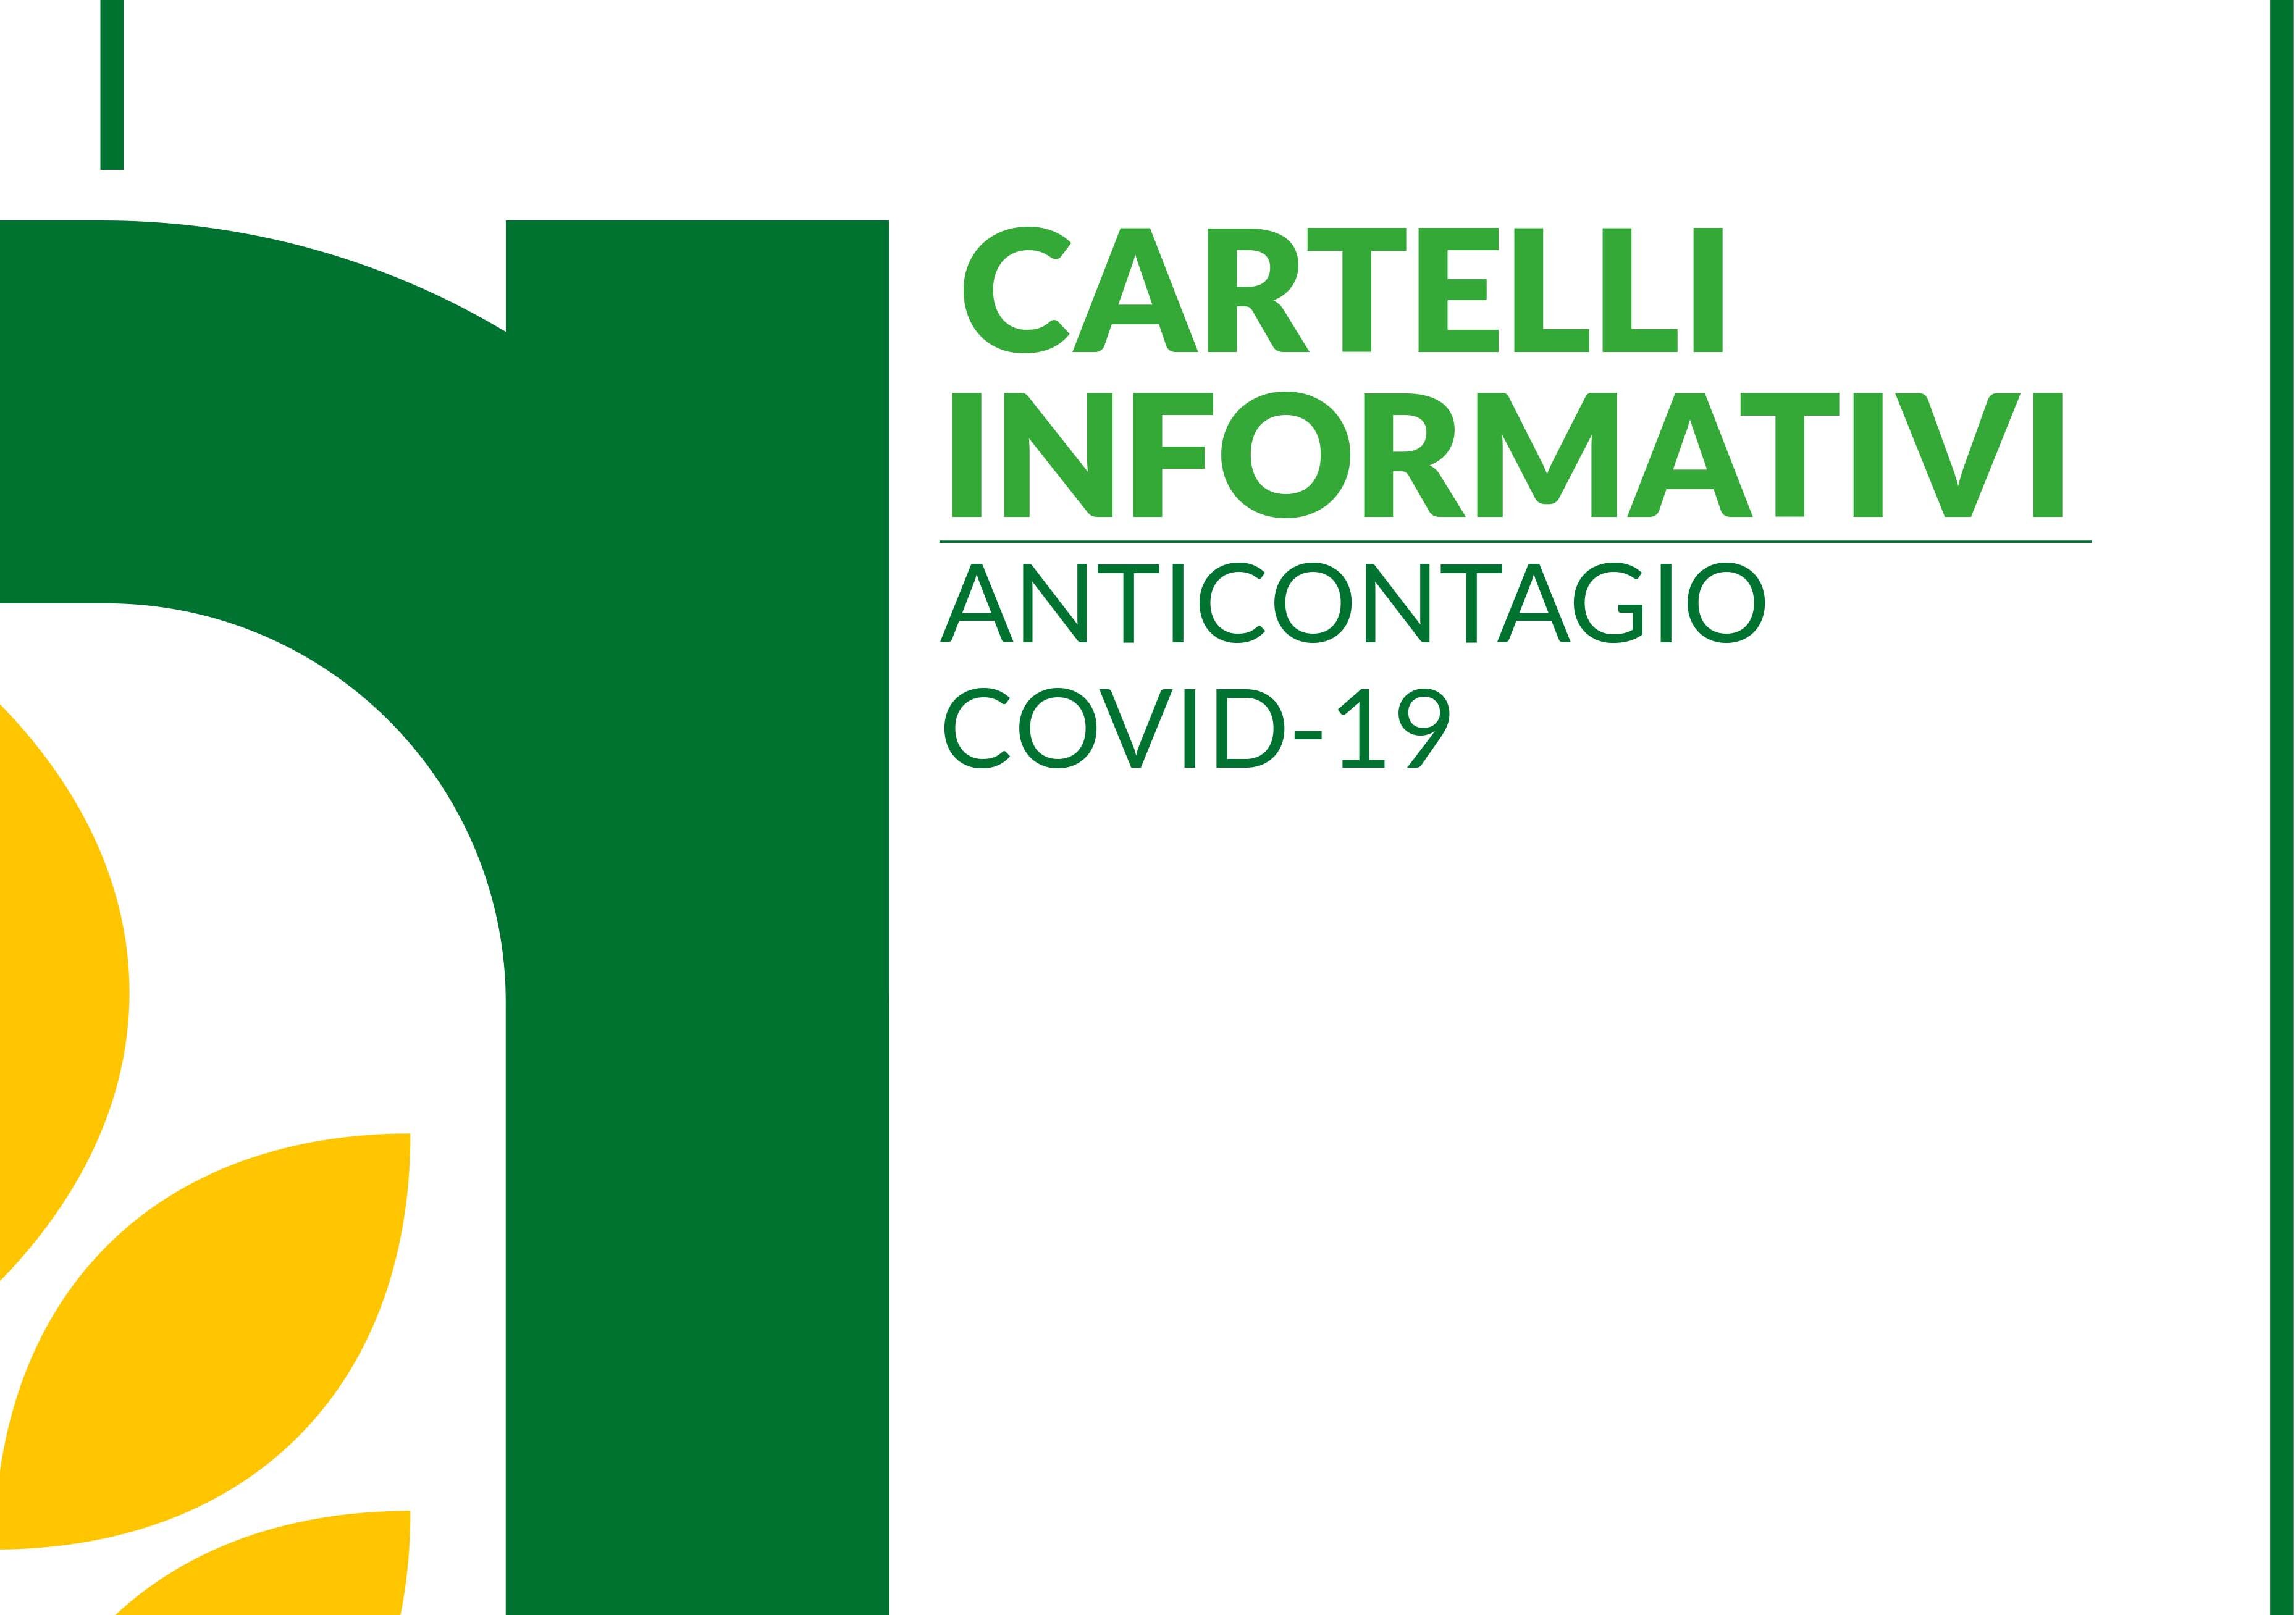 Cartelli informativi anticontagio Covid-19